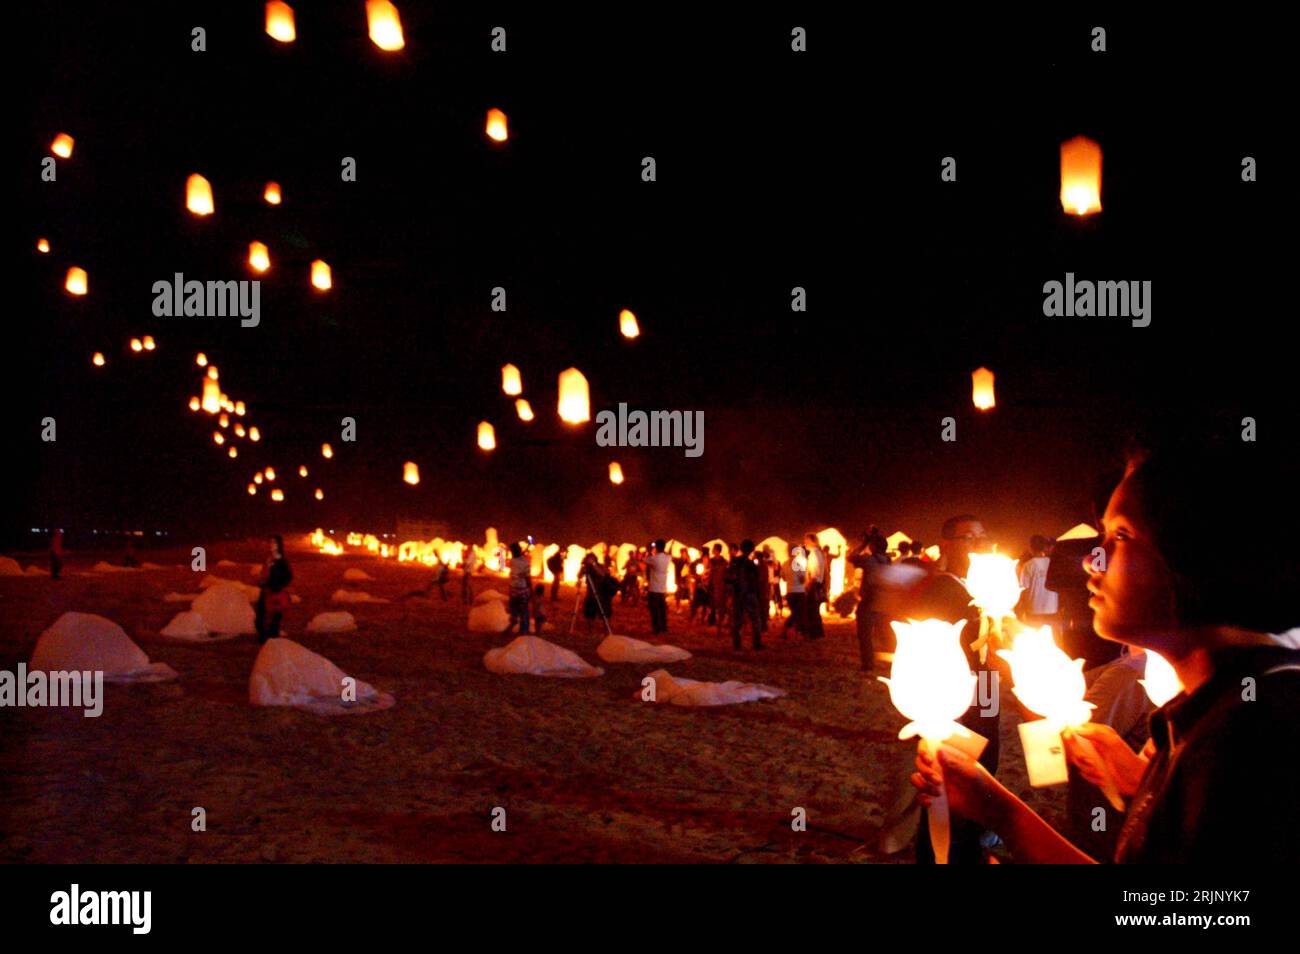 Bildnummer : 51038470 Datum : 26.12.2005 Copyright : imago/Xinhua Angehörige gedenken mit brennenden Kerzen und freischwebenen Laternen der Opfer der tsunami-Katastrophe vor eine Jahr am Strand von Khao Lak BEI Nacht - Provinz Phangnga - PUBLICATIONxNOTxINxCHN, Personen, Landufnahschaft, Resthlichme, 2005 PhangNga, Phang Nga, tsunami-Katastrophe, Trauerzeremonie, Gedenkfeier, Gedenken, Erinnerung, Erster, 1. Jahrestag, Anteilnahme, Trauernde, nachts, Nacht, Kerze, Kerzen, brennen, brennt, brennend, Laterne, Laternen, Angehörige, Angehöriger, Familienangehörige, Familienangehöriger ; , quer, Ko Banque D'Images